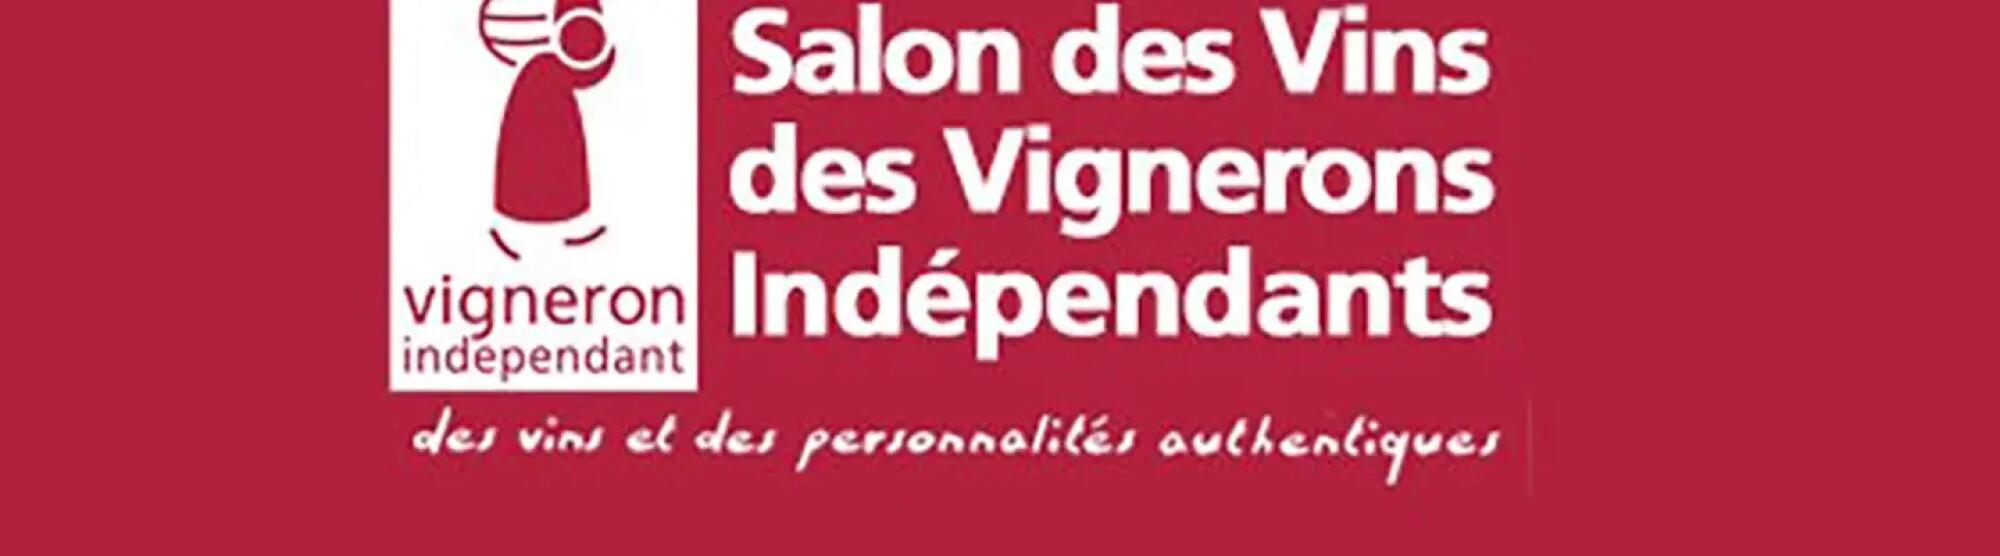 LA02_salon-des-vins-des-vignerons-independants